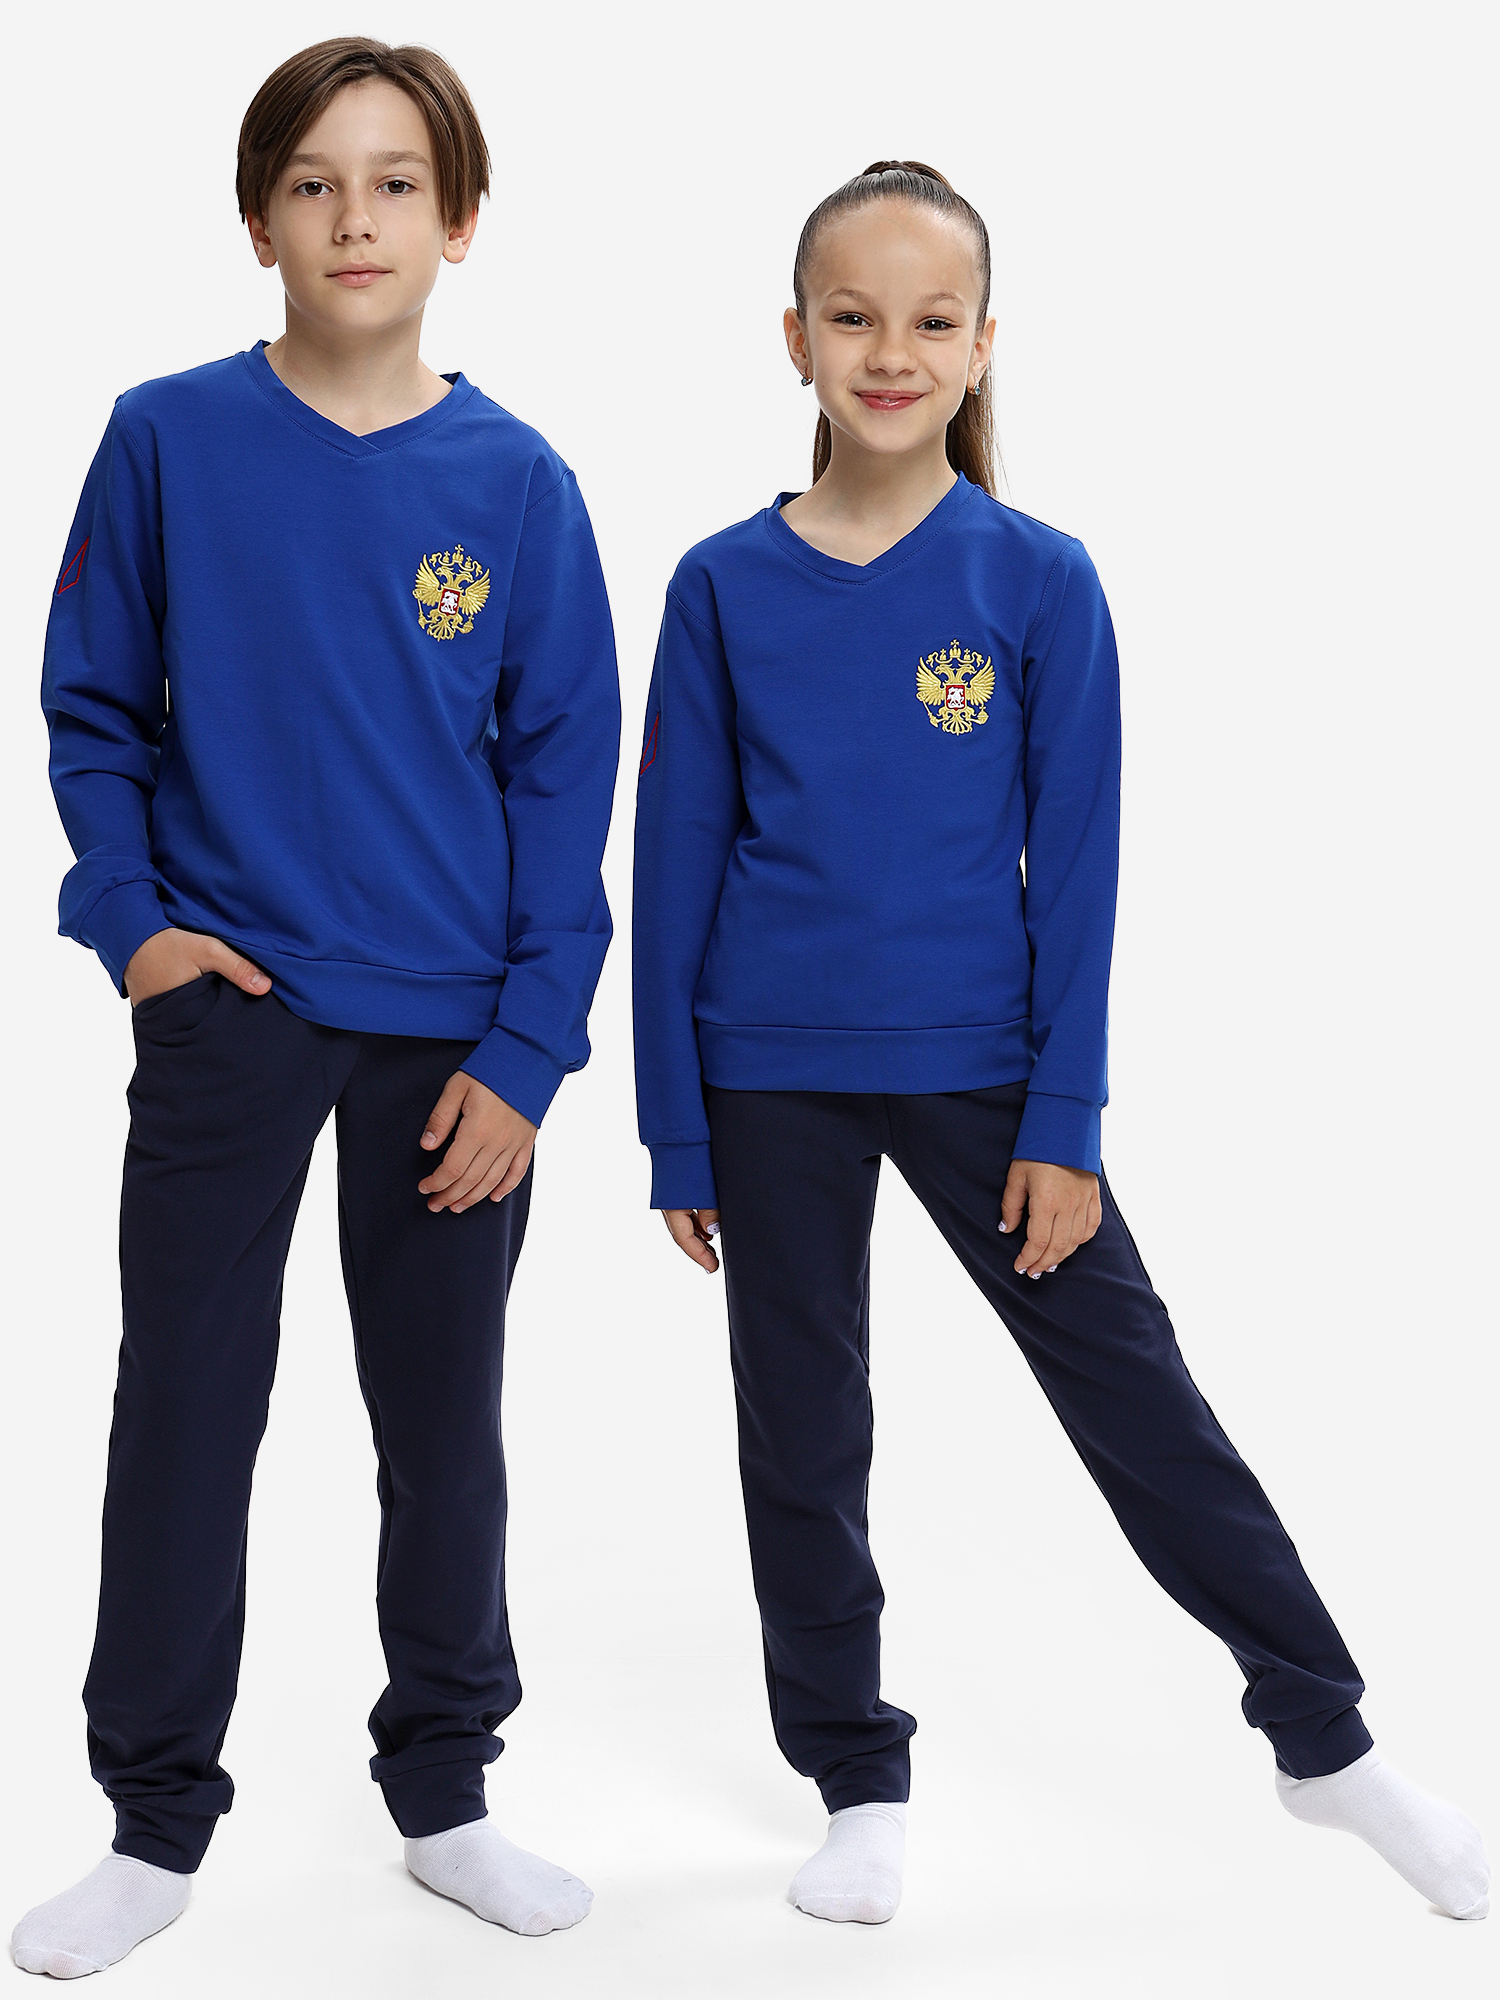 Спортивный костюм детский: для мальчика и девочки WILDWINS, Синий